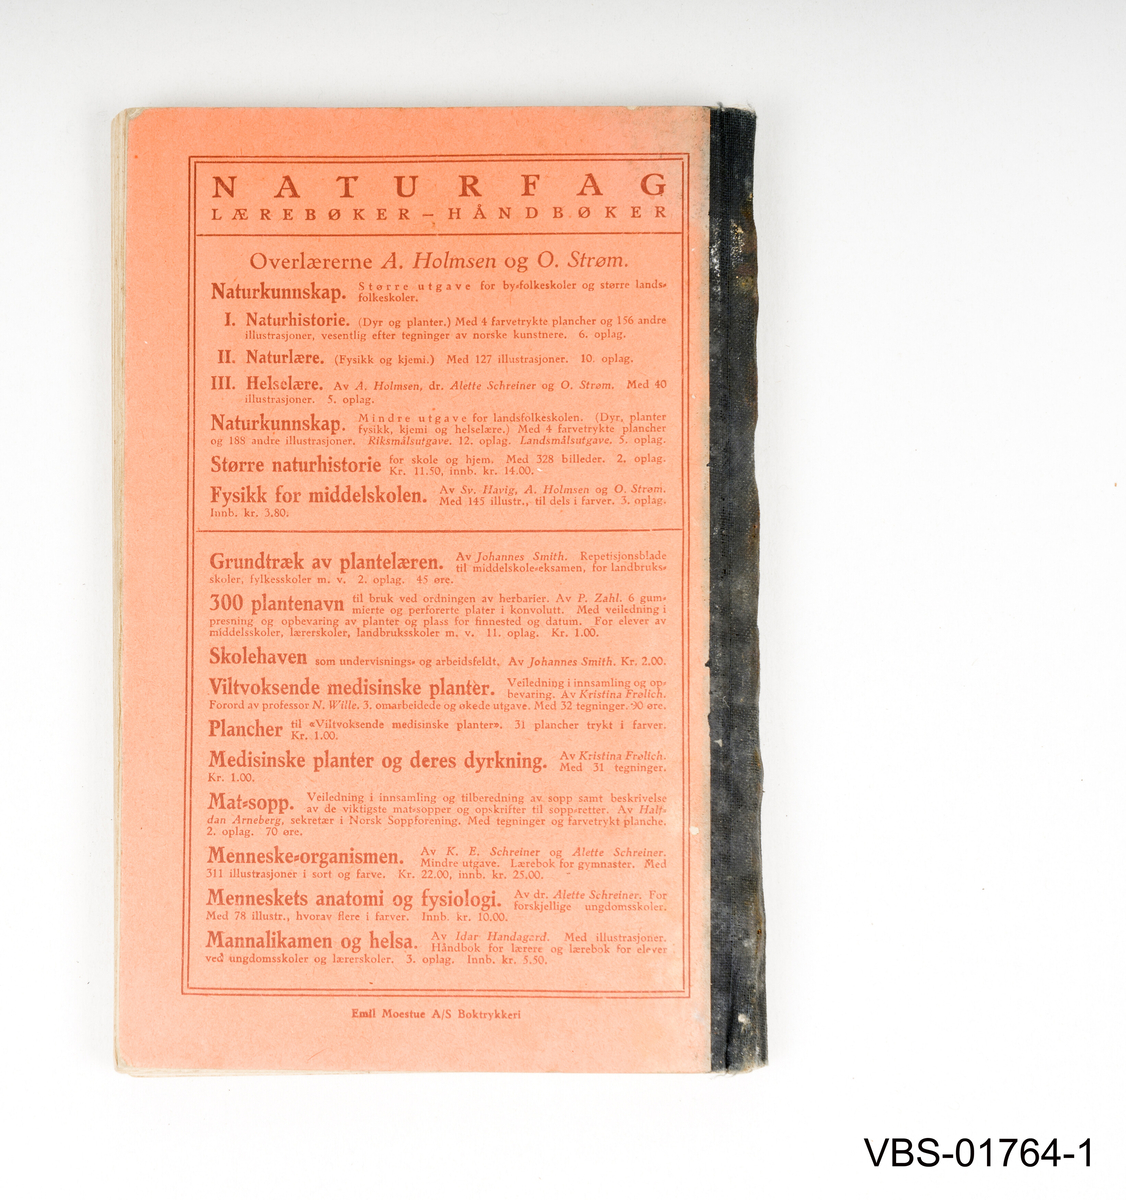 Naturkunnskap bok med tekst og illustrasjoner innvendig.
Innbundet bok med stoff dekkede omslag. 152 sider, utgitt og trykt i Oslo 1925.